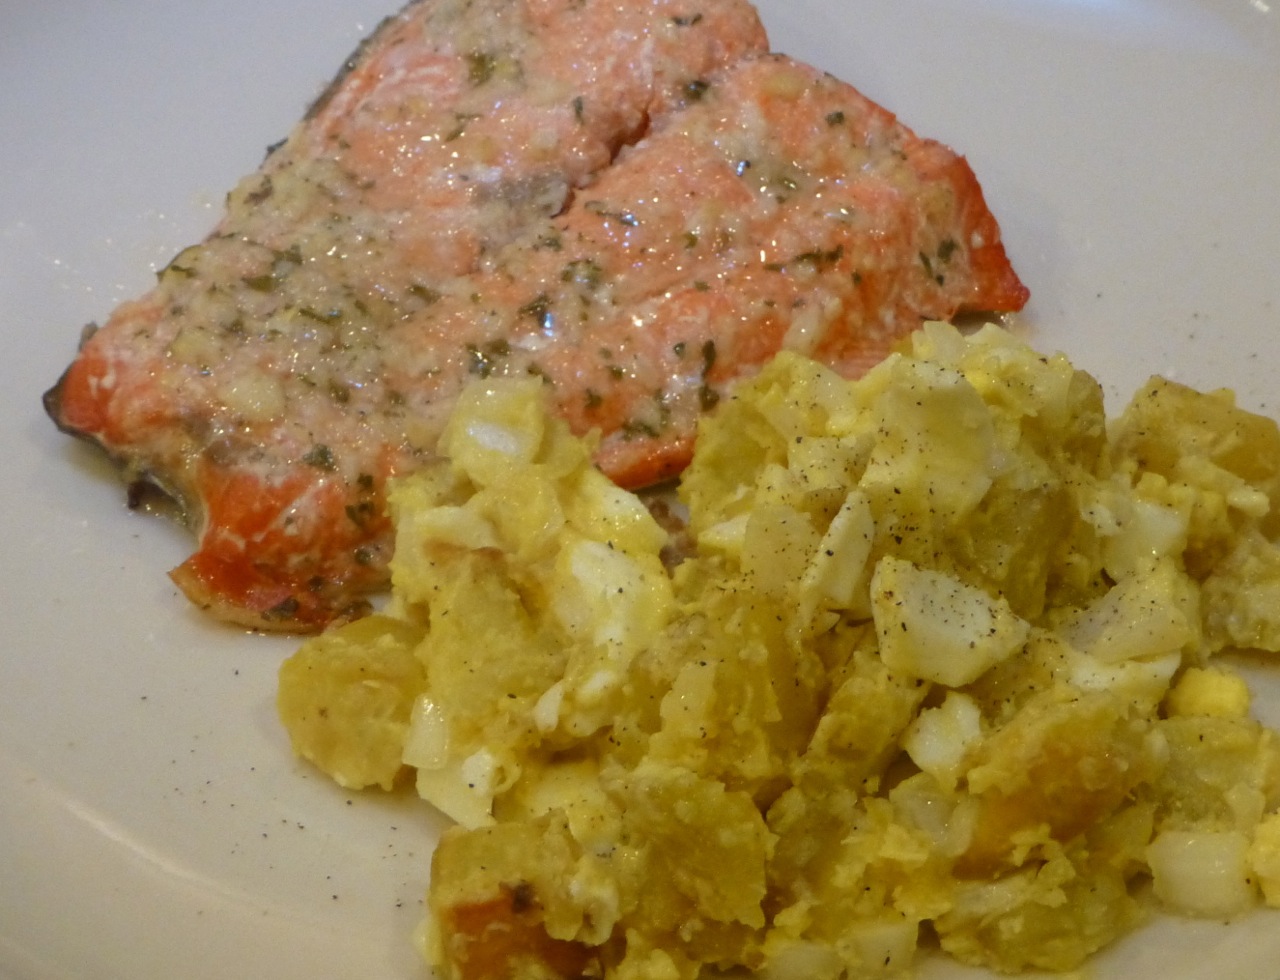 Egg and Potato Salad with Baked Salmon